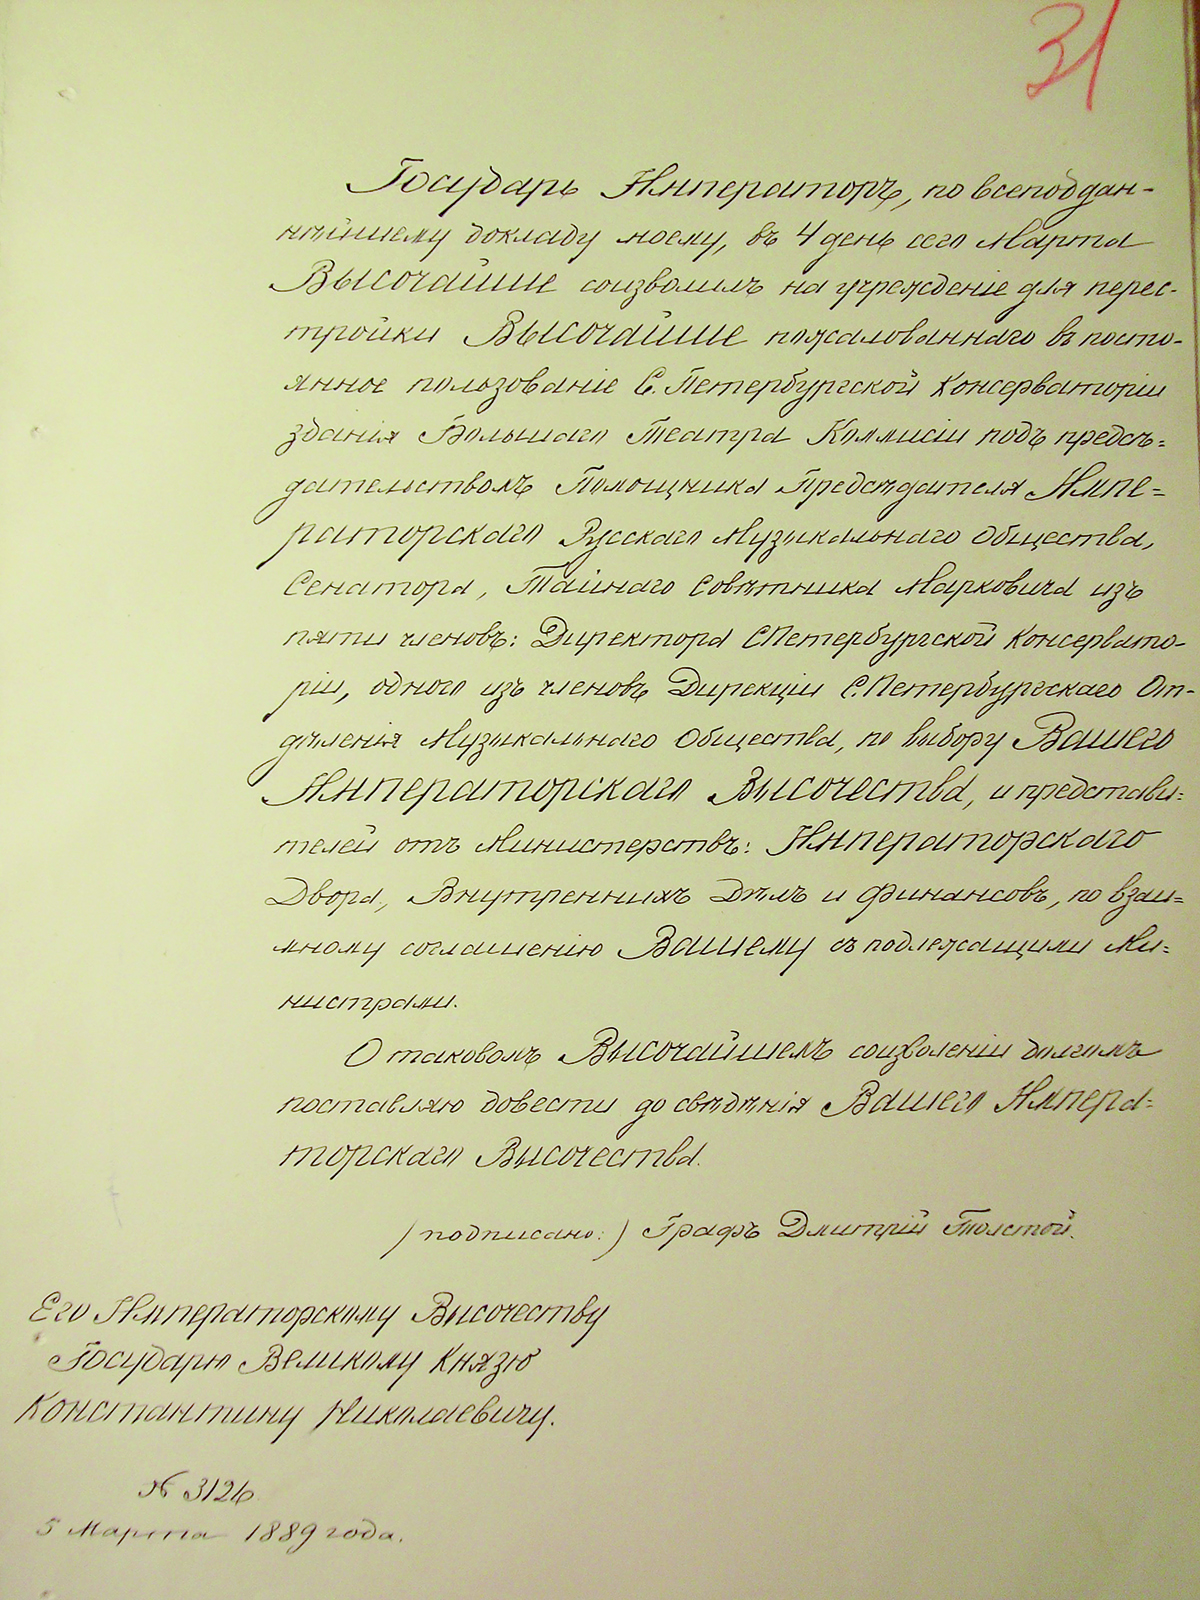 Копия Указа Александра III о передаче Санкт-Петербургской консерватории здания Большого театра. 1889